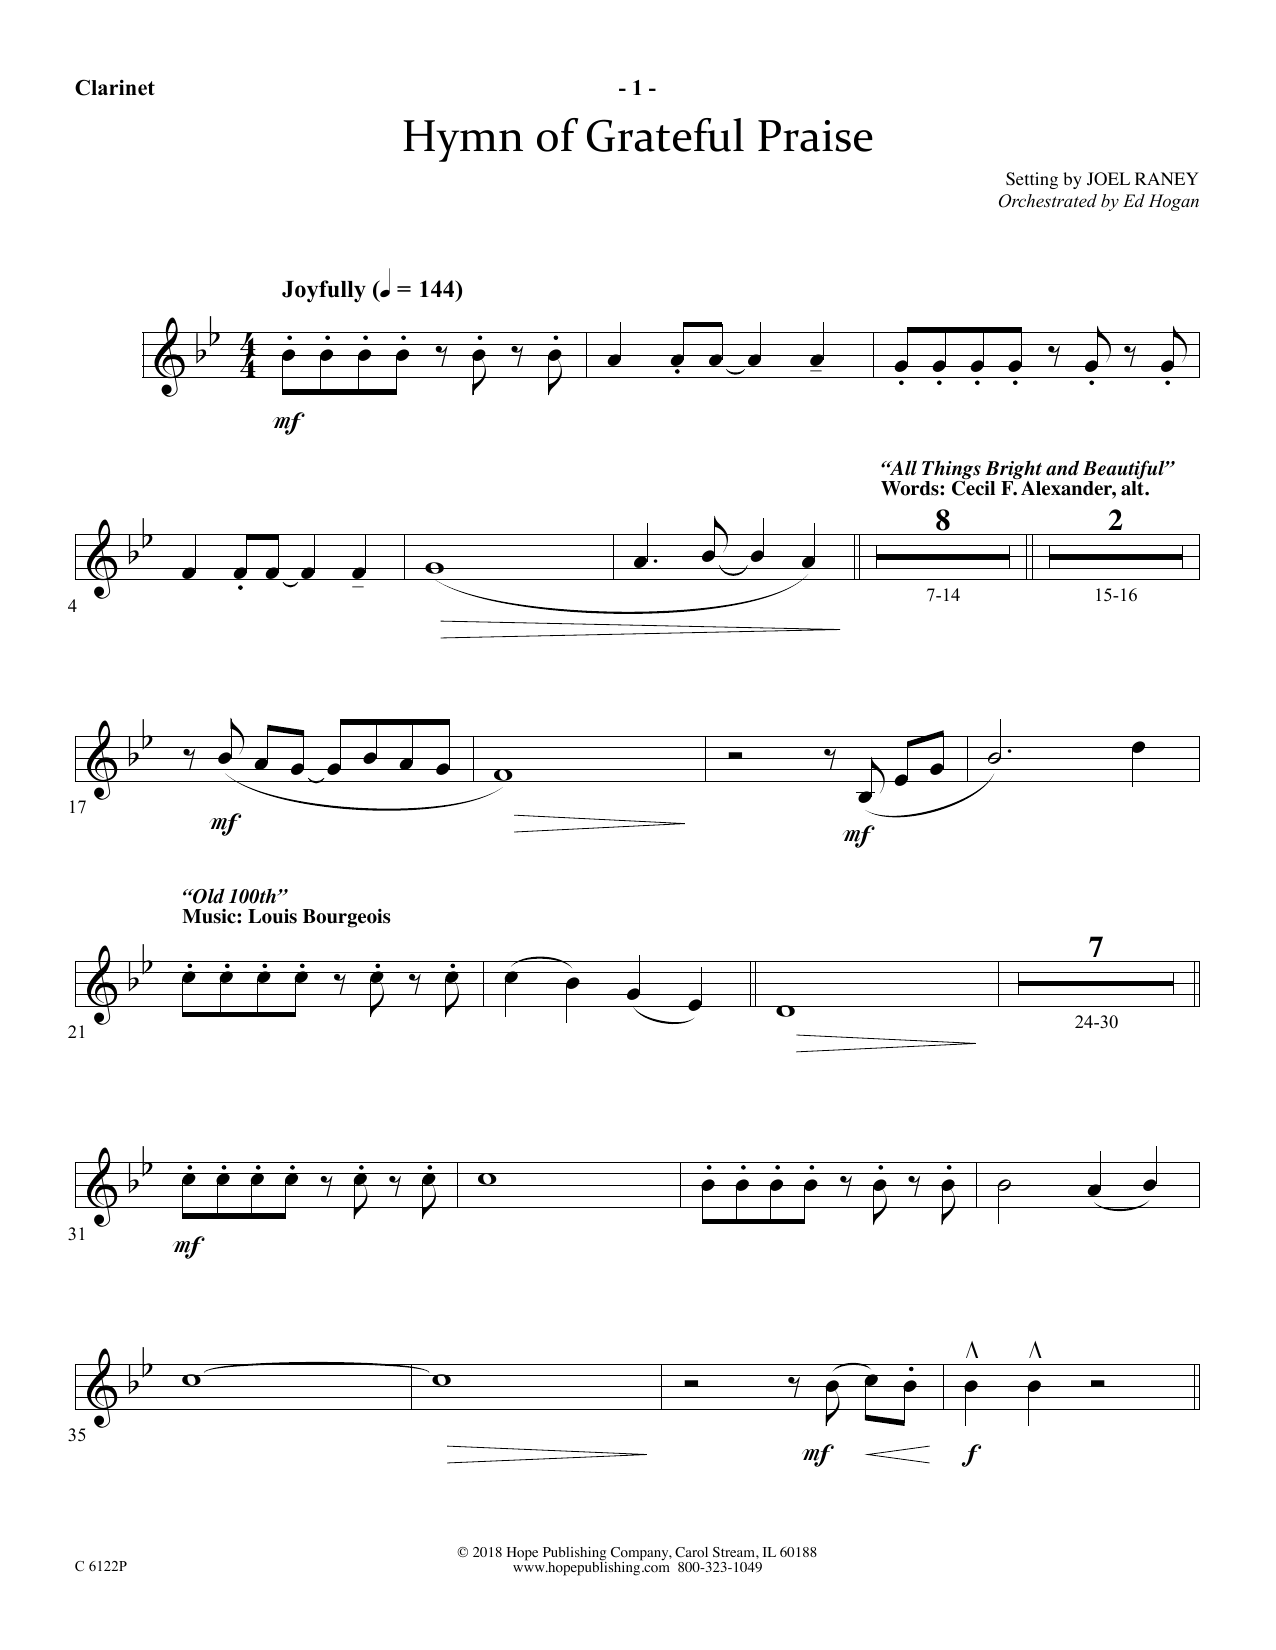 Download Joel Raney Hymn Of Grateful Praise - Clarinet Sheet Music